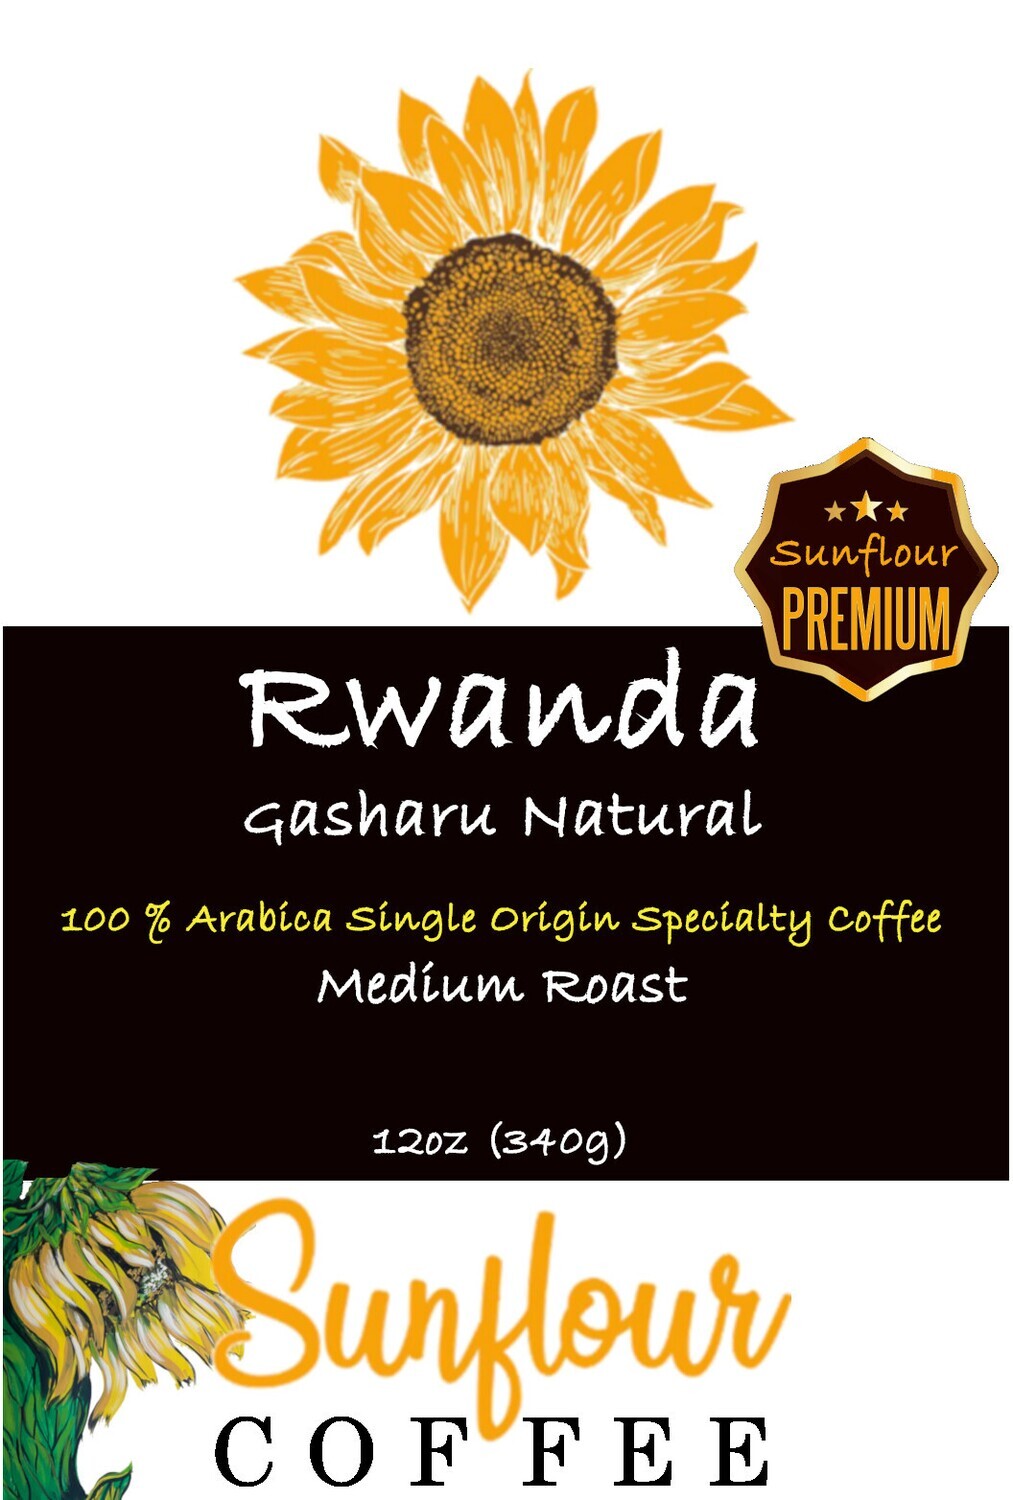 Rwanda Gasharu Natural Premium